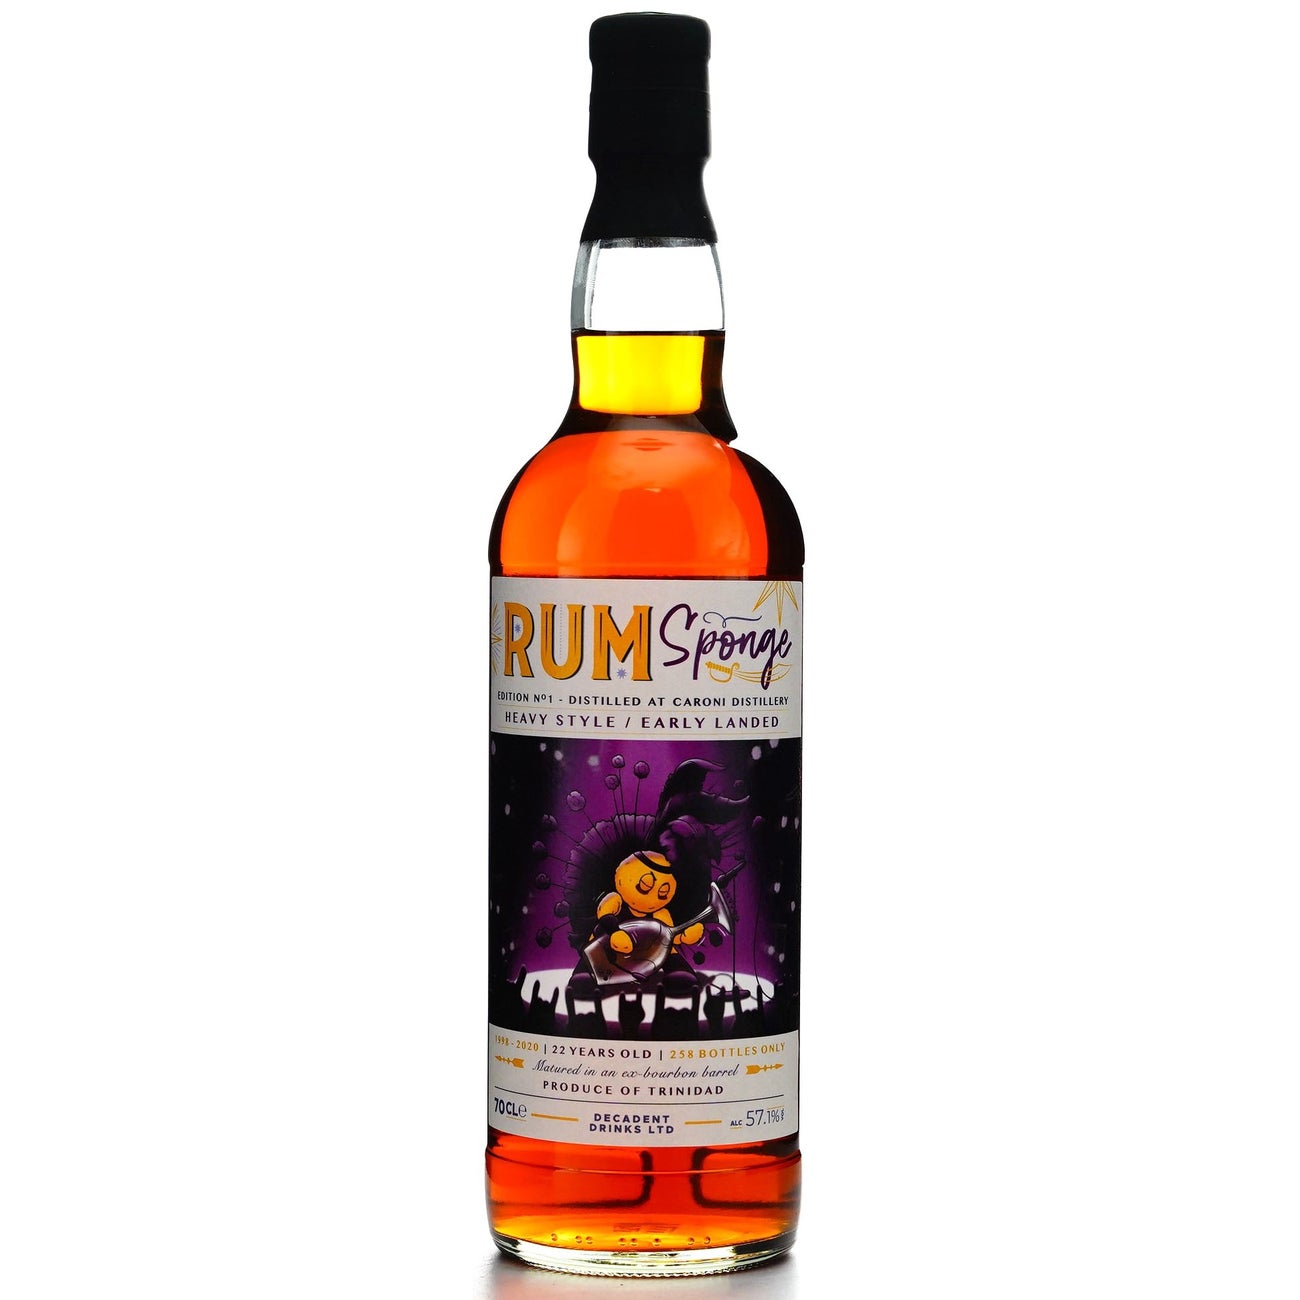 Caroni 1998 Rum Front